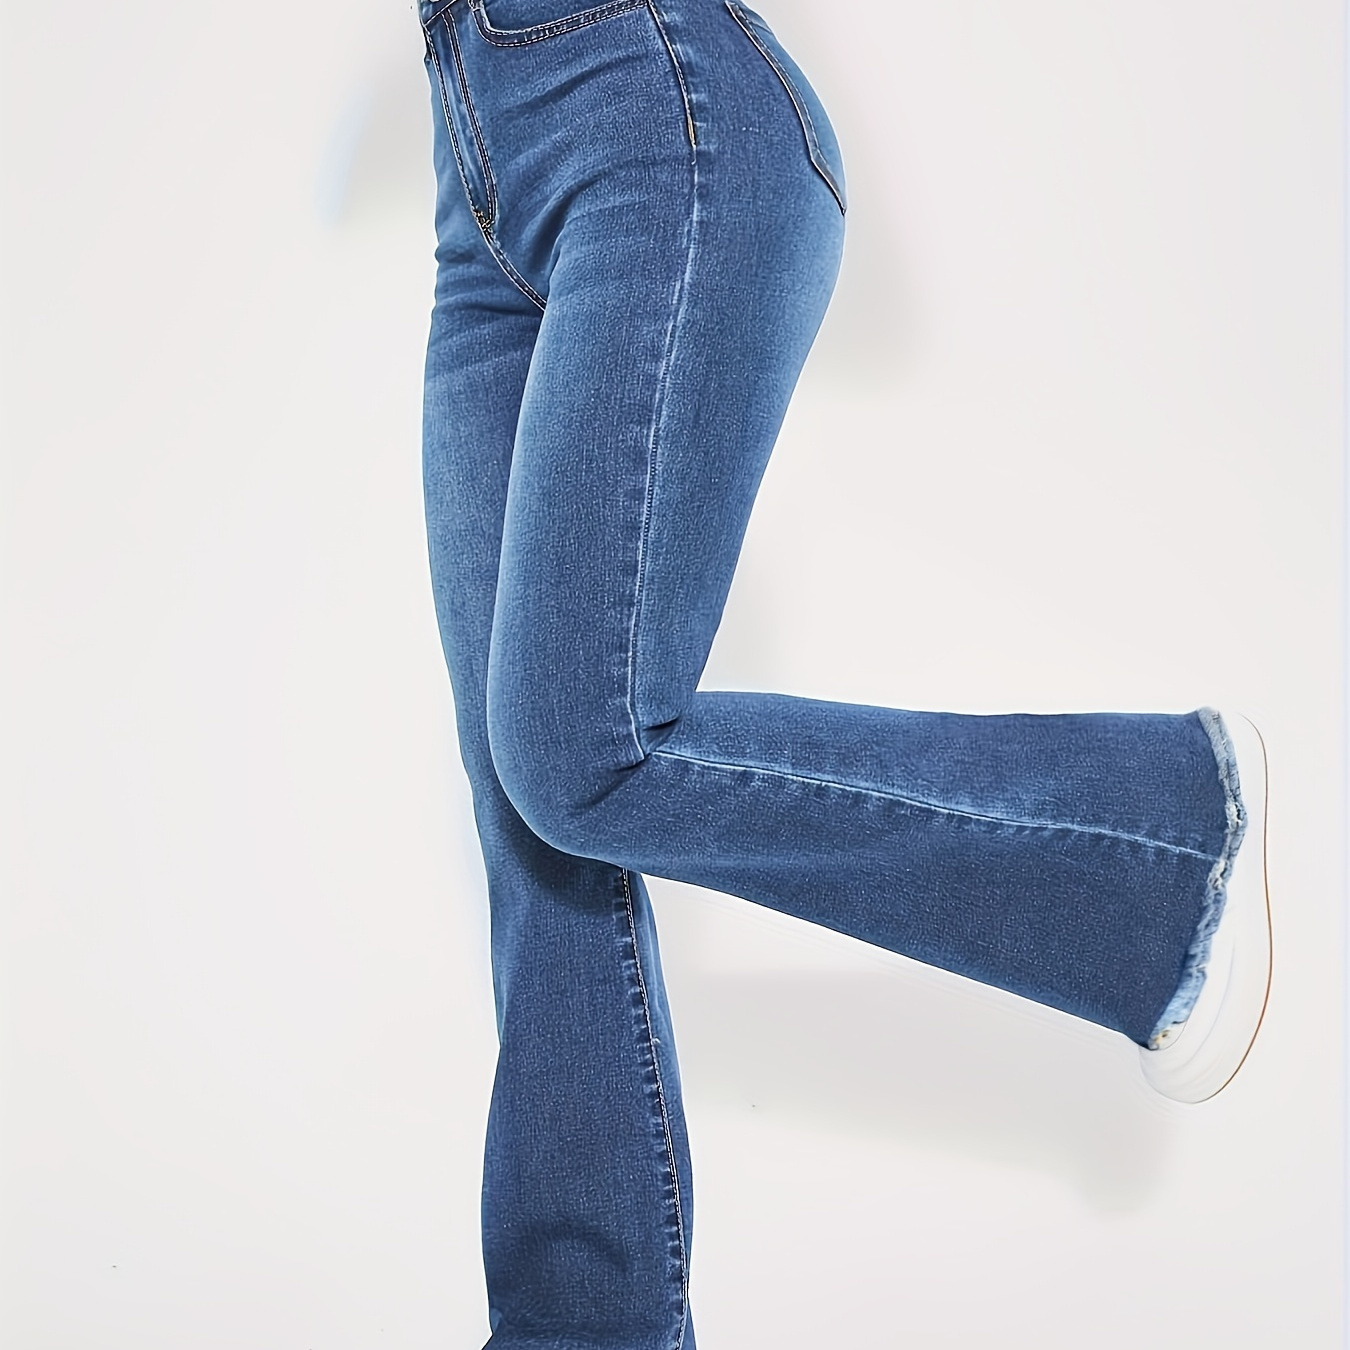 

Flare Leg Plain Washed Blue Casual Style Zipper Button Closure Denim Pants, Women's Denim Jeans & Clothing